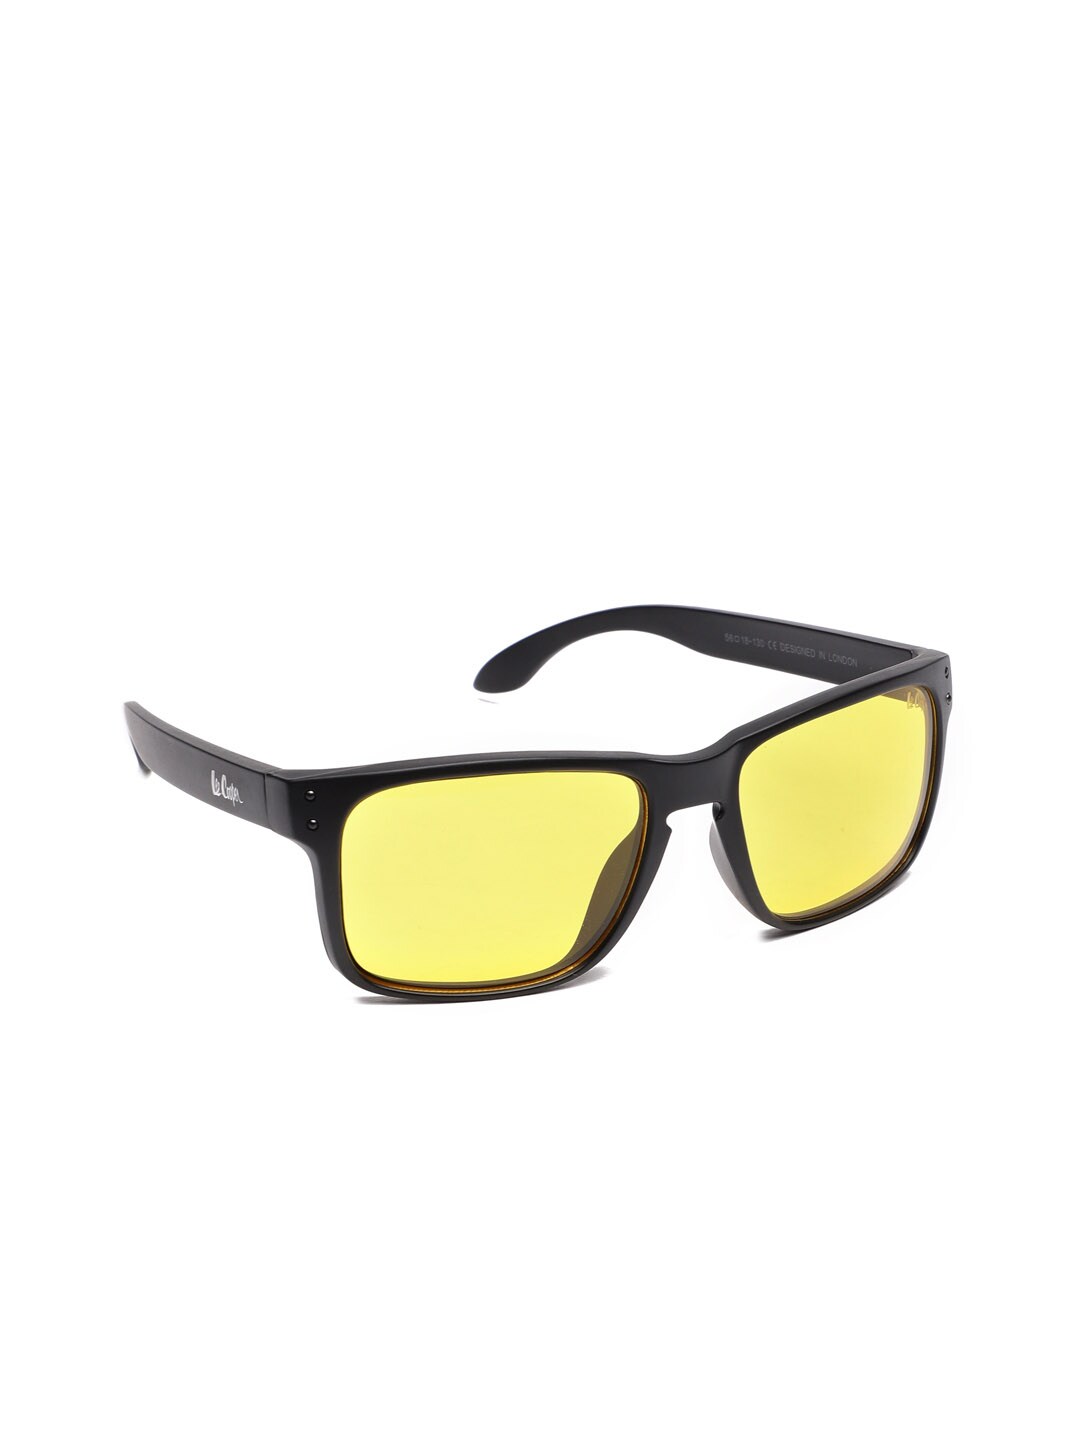 Lee Cooper Unisex Square Sunglasses LC9138 BLKYLW Price in India